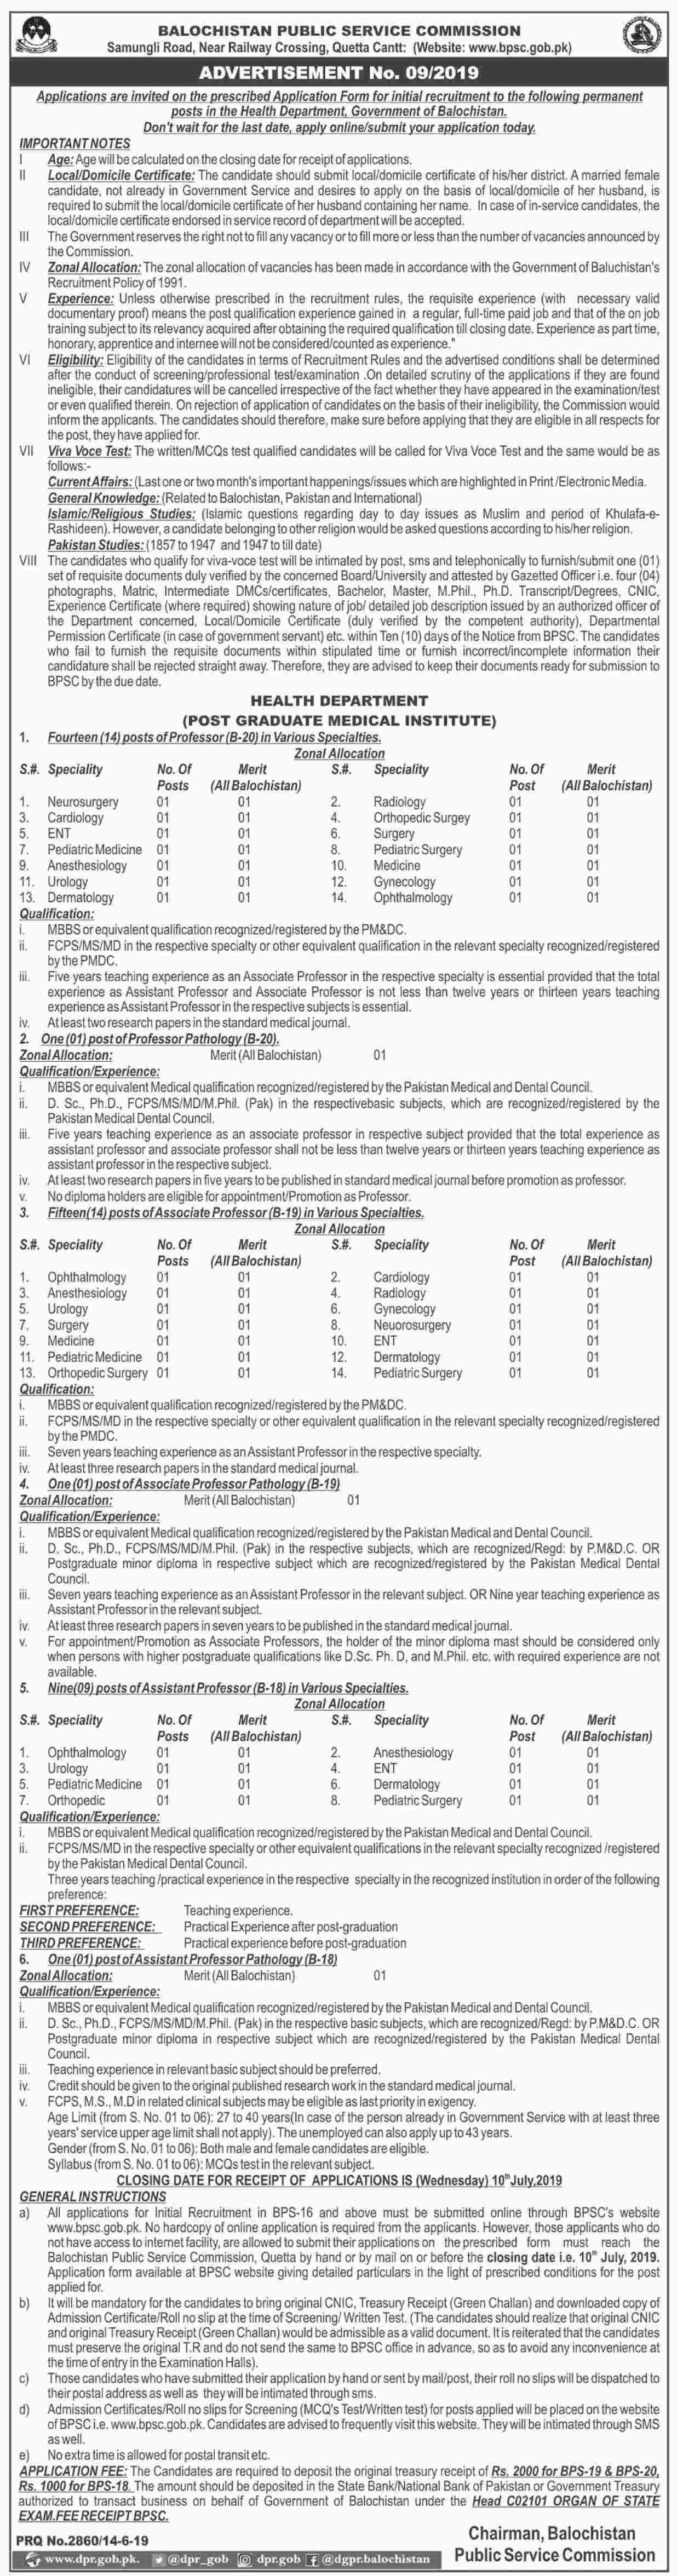 Balochistan Public Service Commission (BPSC) jobs 2019